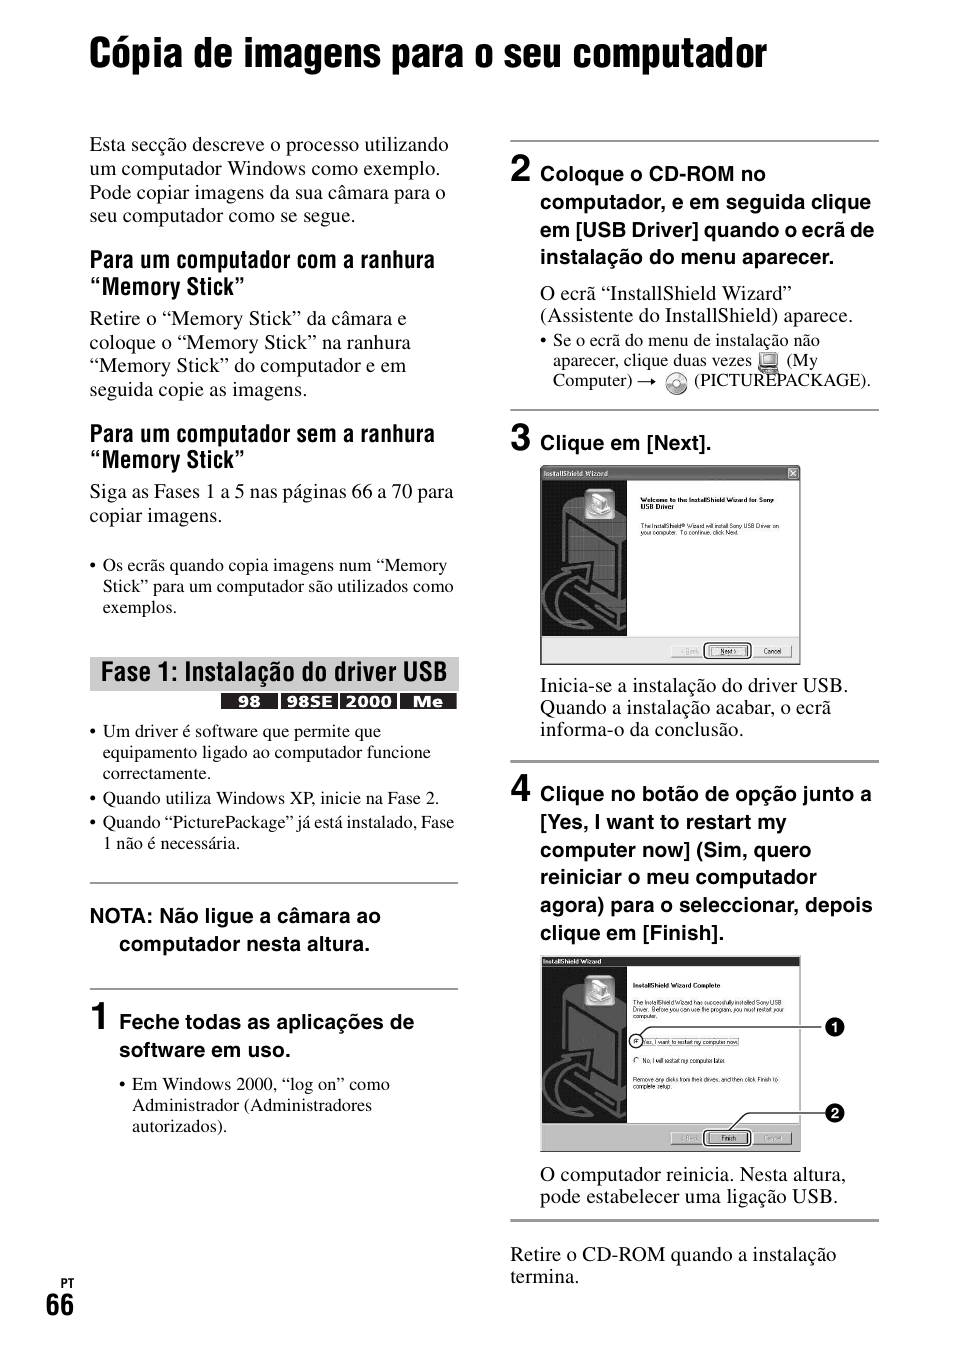 Cópia de imagens para o seu computador, Fase 1: instalação do driver usb | Sony DSC-H1 Manual del usuario | Página 180 / 227